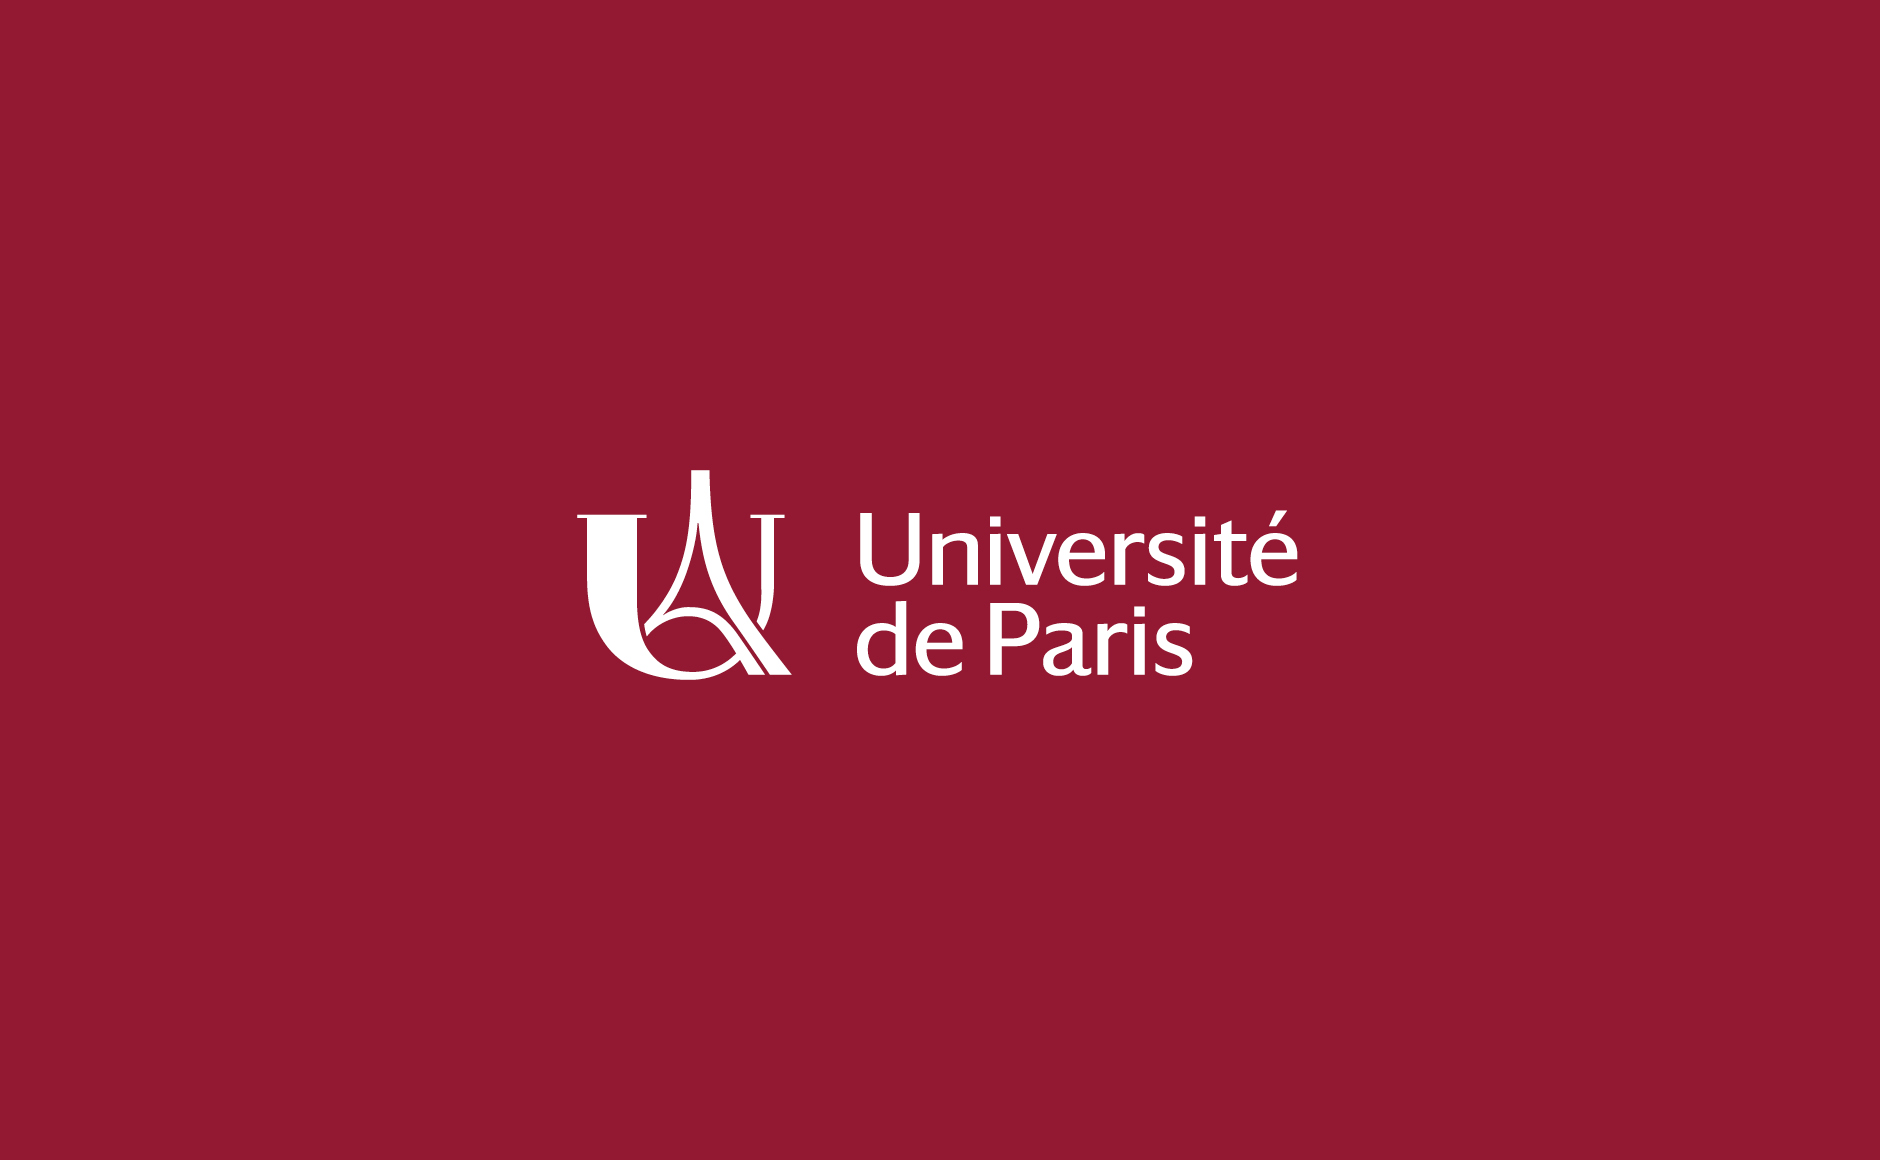 Université de Paris lance un programme de bourses pour les étudiants internationaux